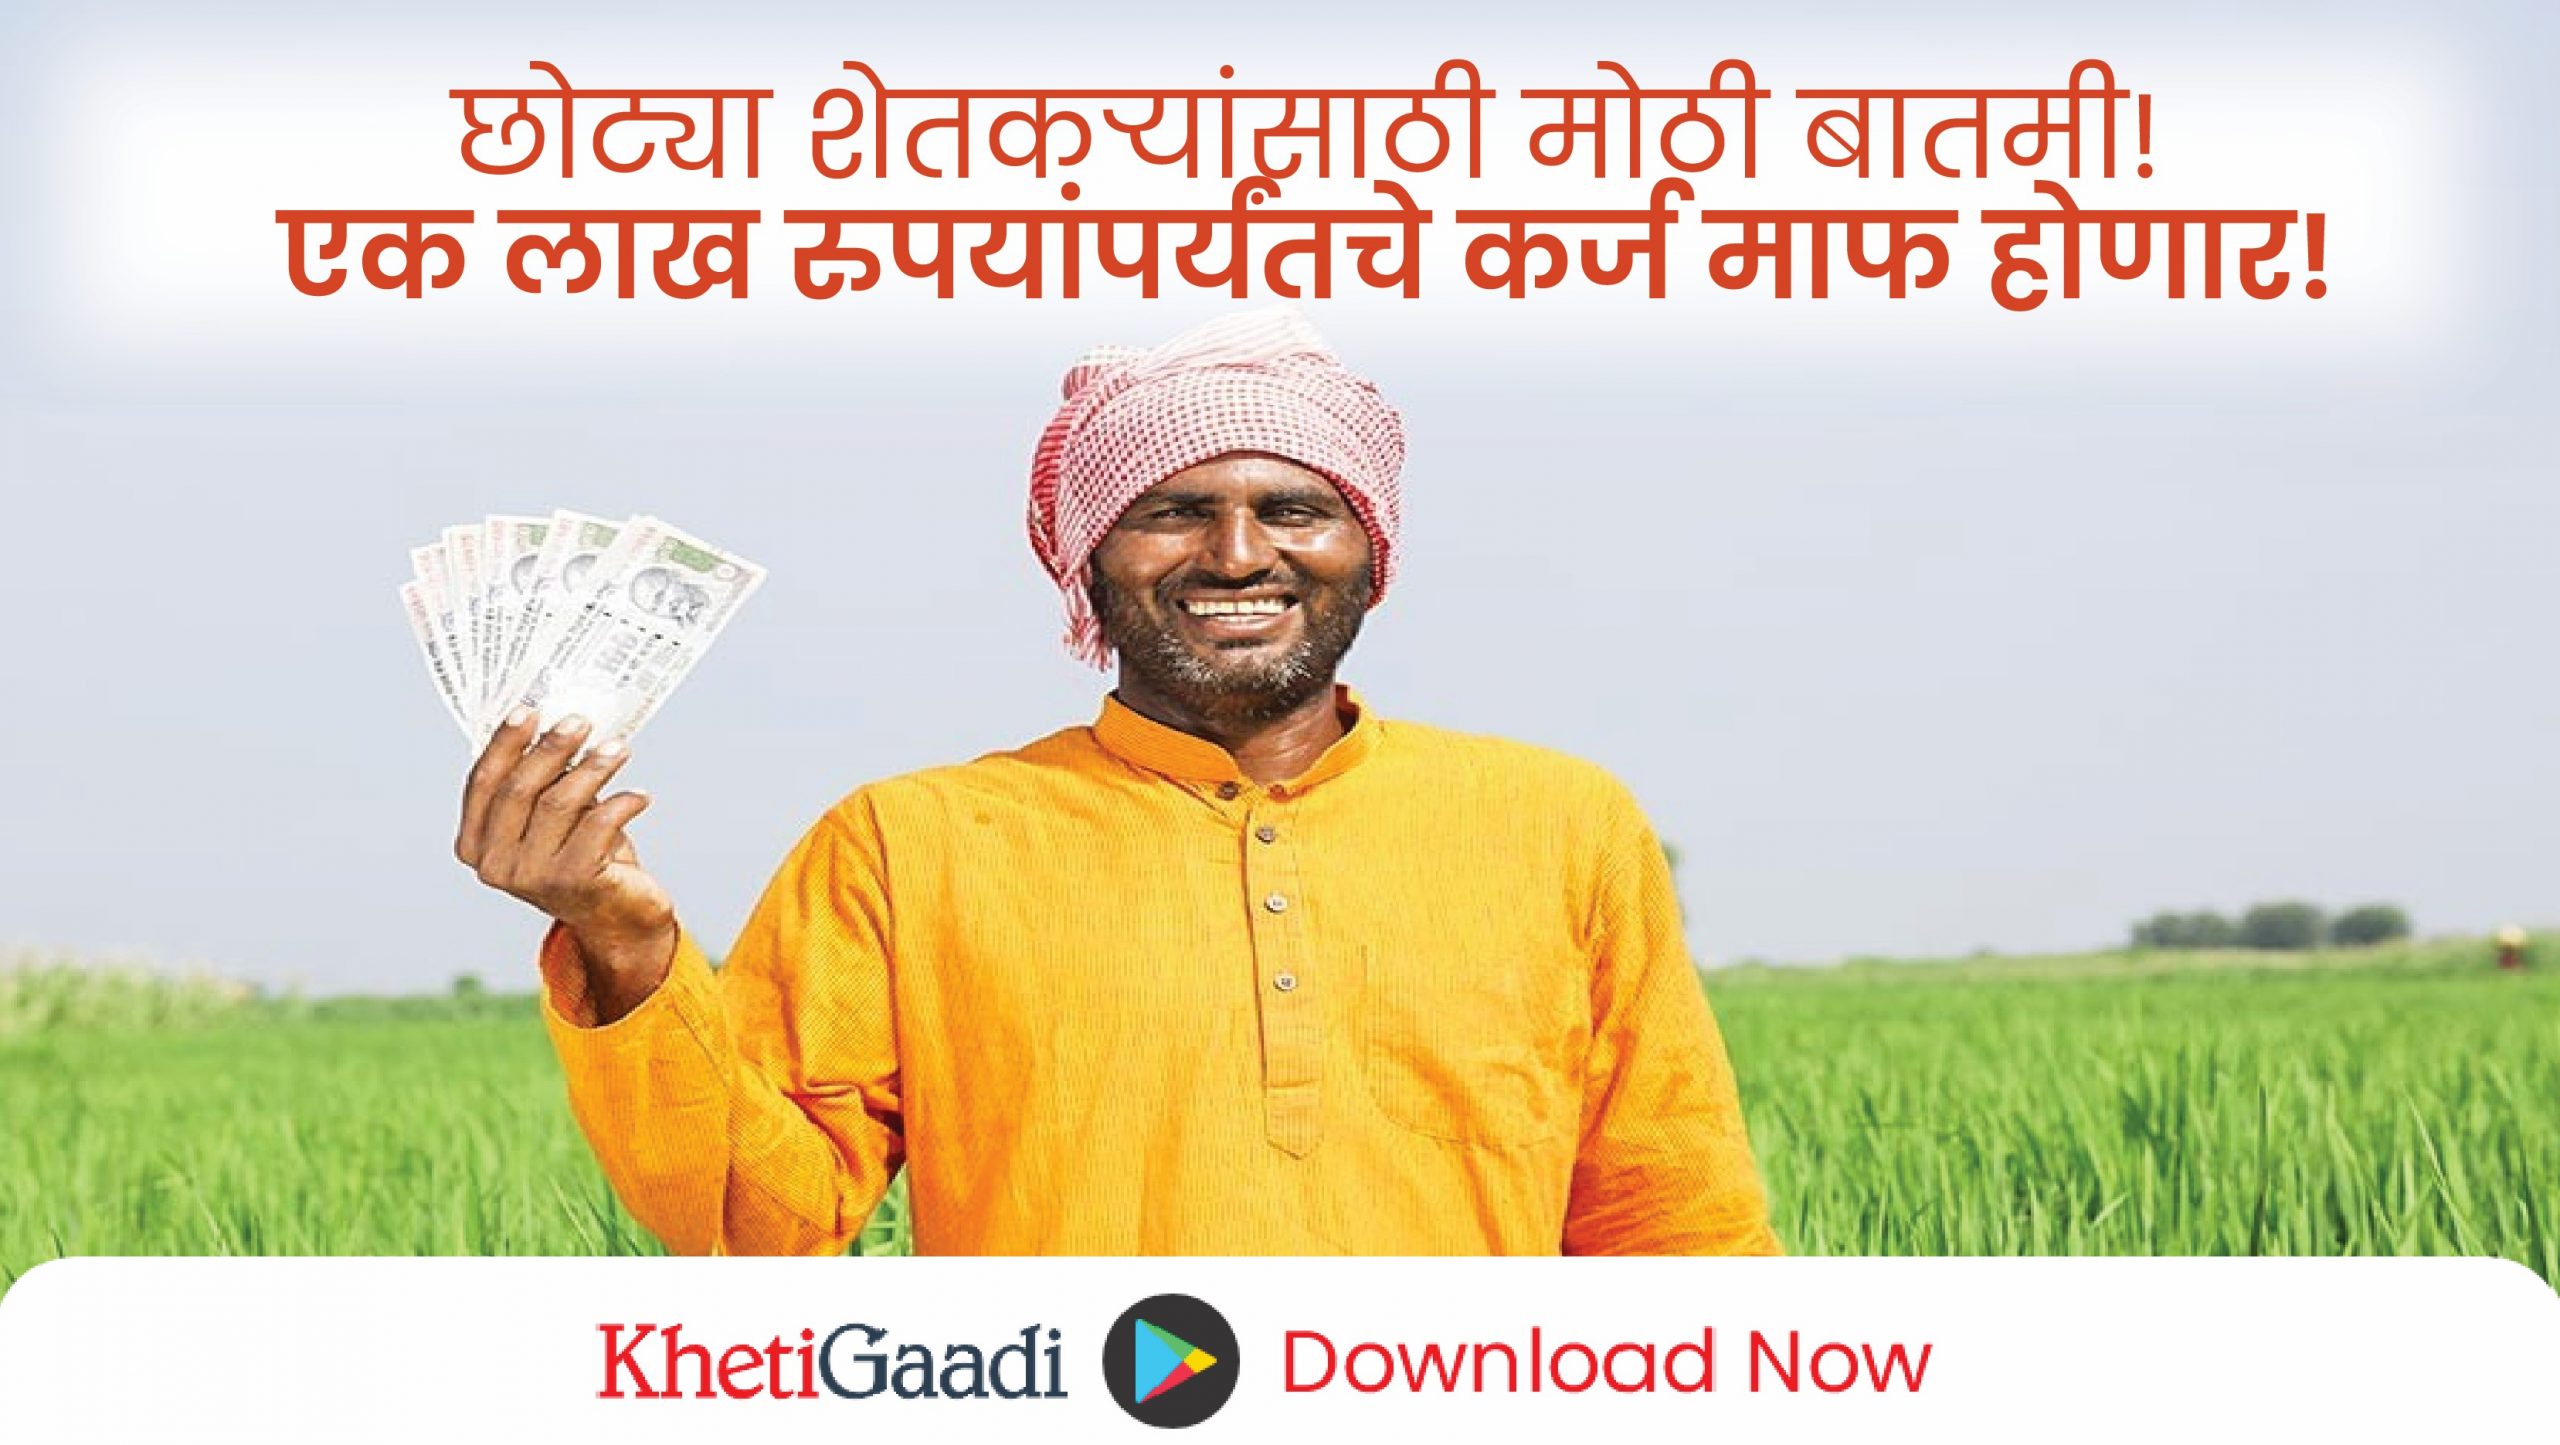 छोट्या शेतकऱ्यांसाठी मोठी बातमी! एक लाख रुपयांपर्यंतचे कर्ज माफ होणार!